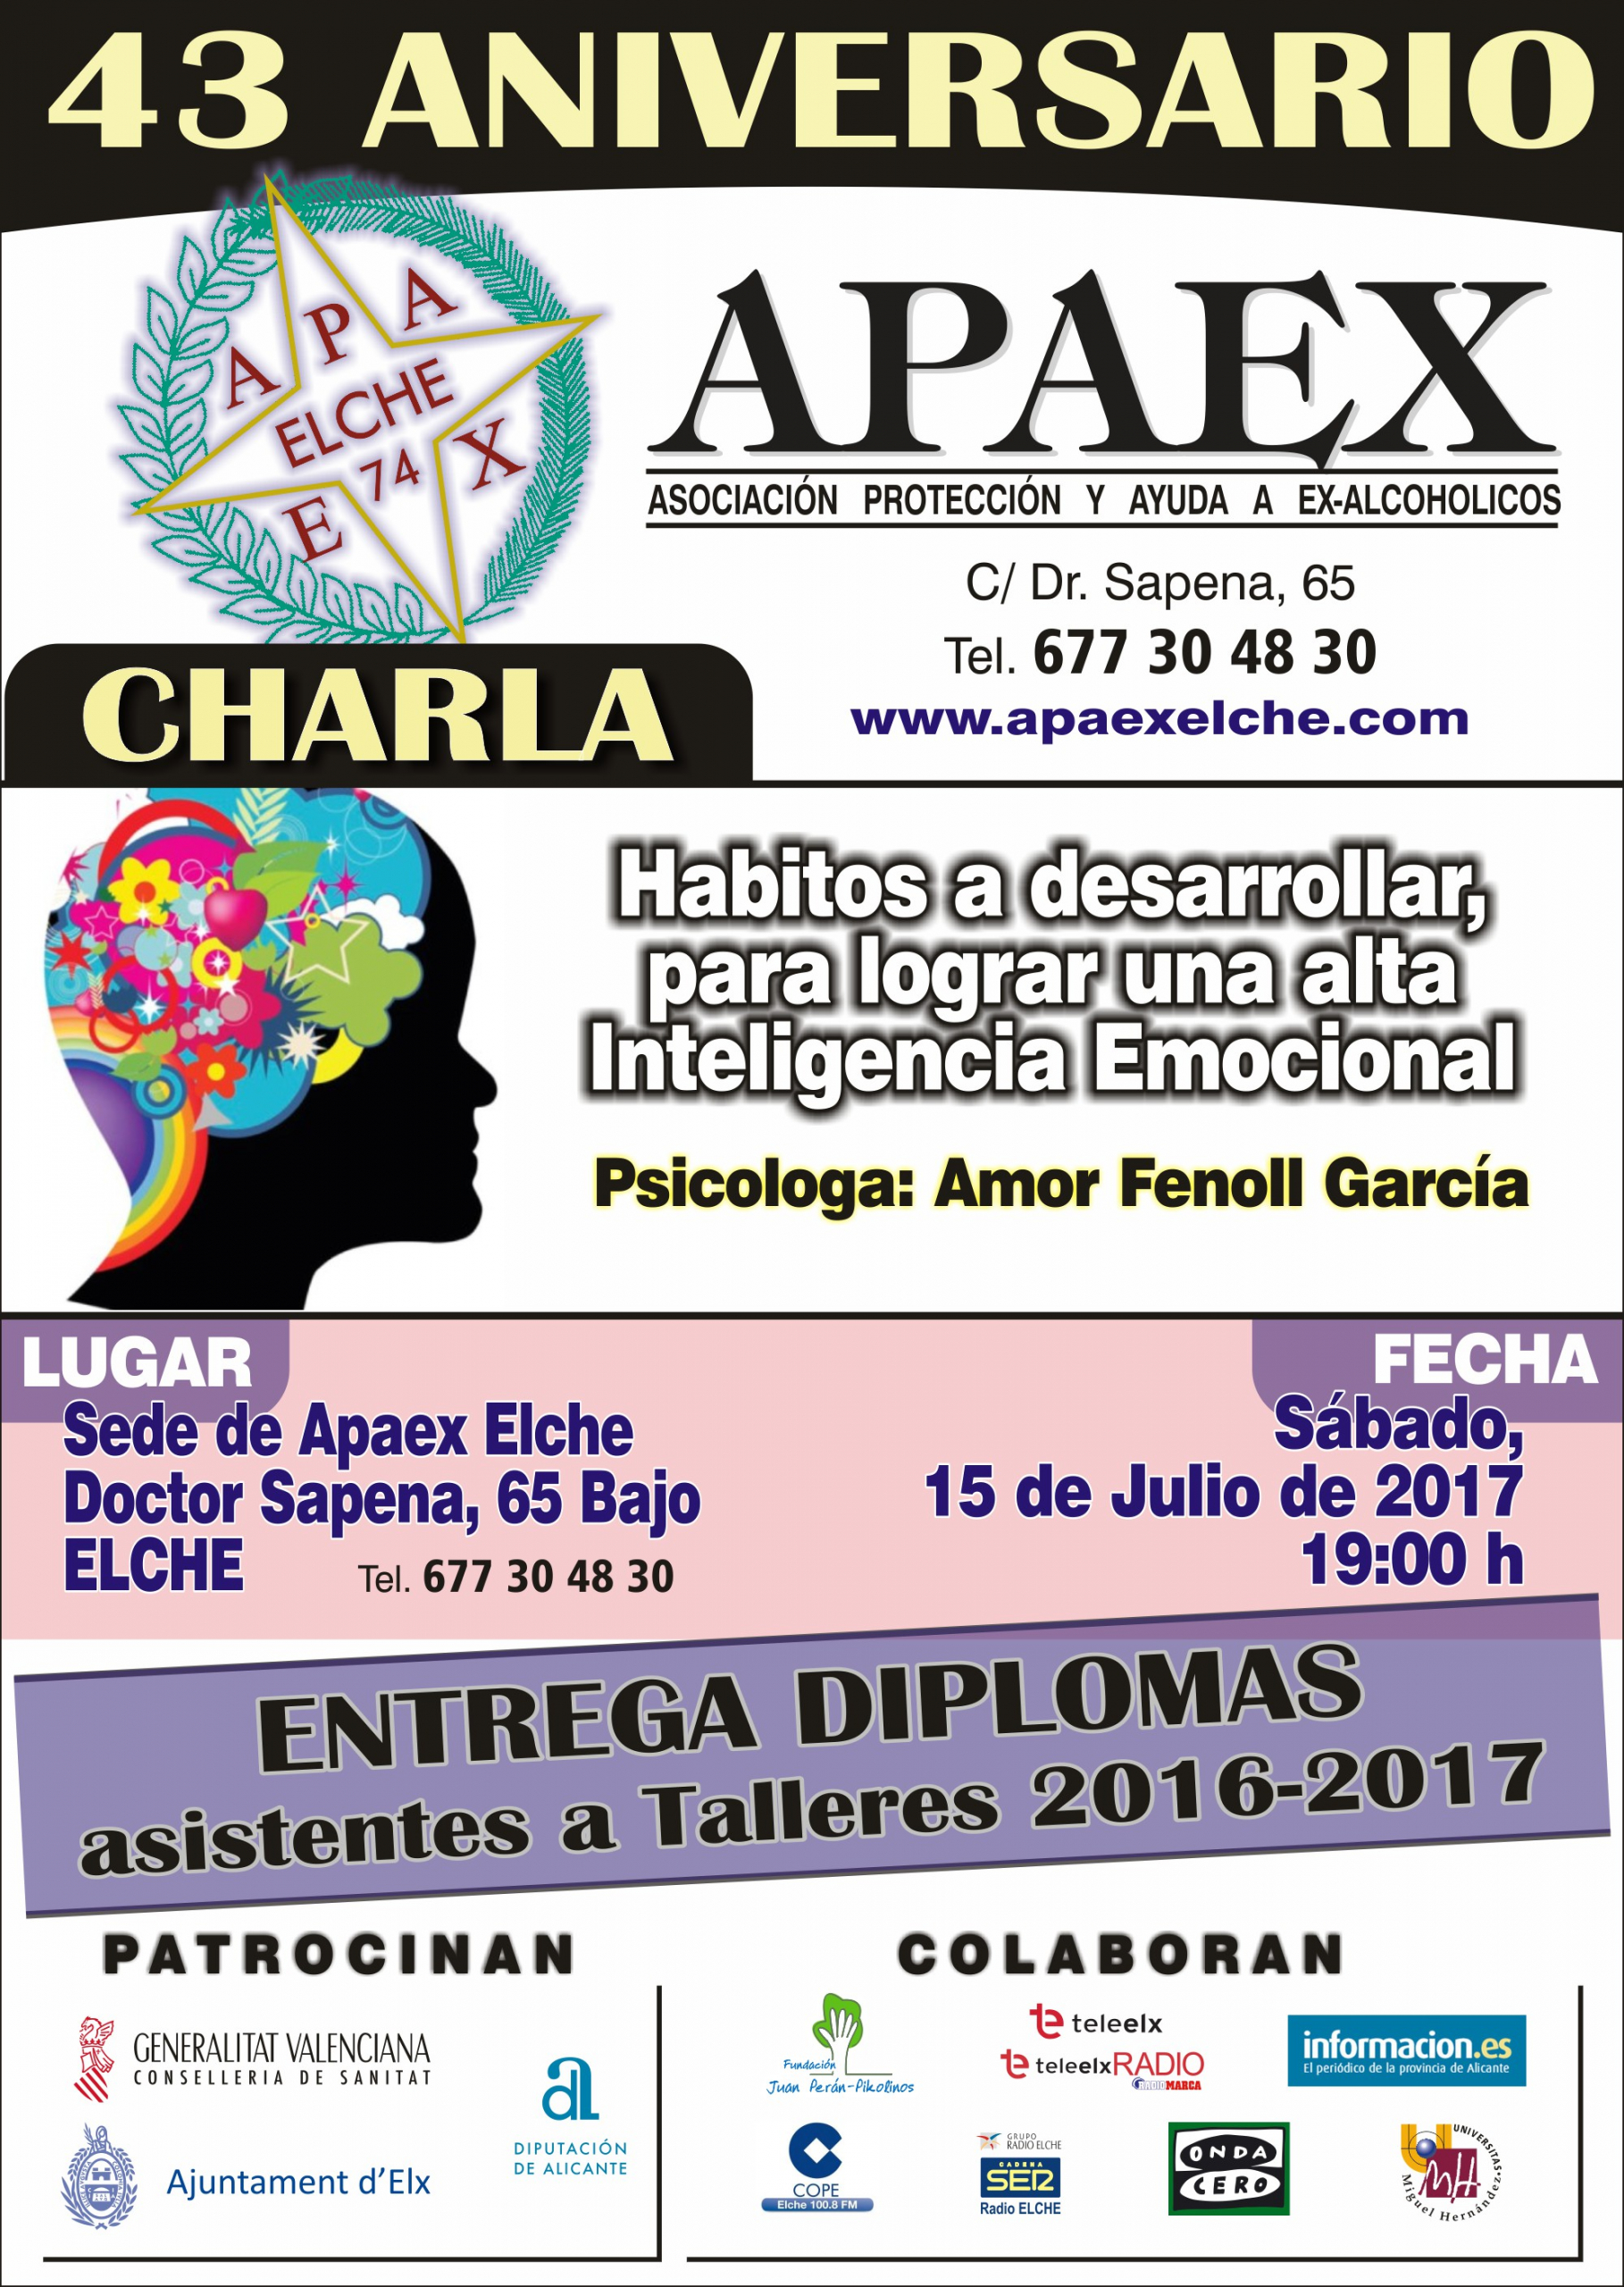 43 Aniversario APAEX Elche charla sobre inteligencia Emocional.